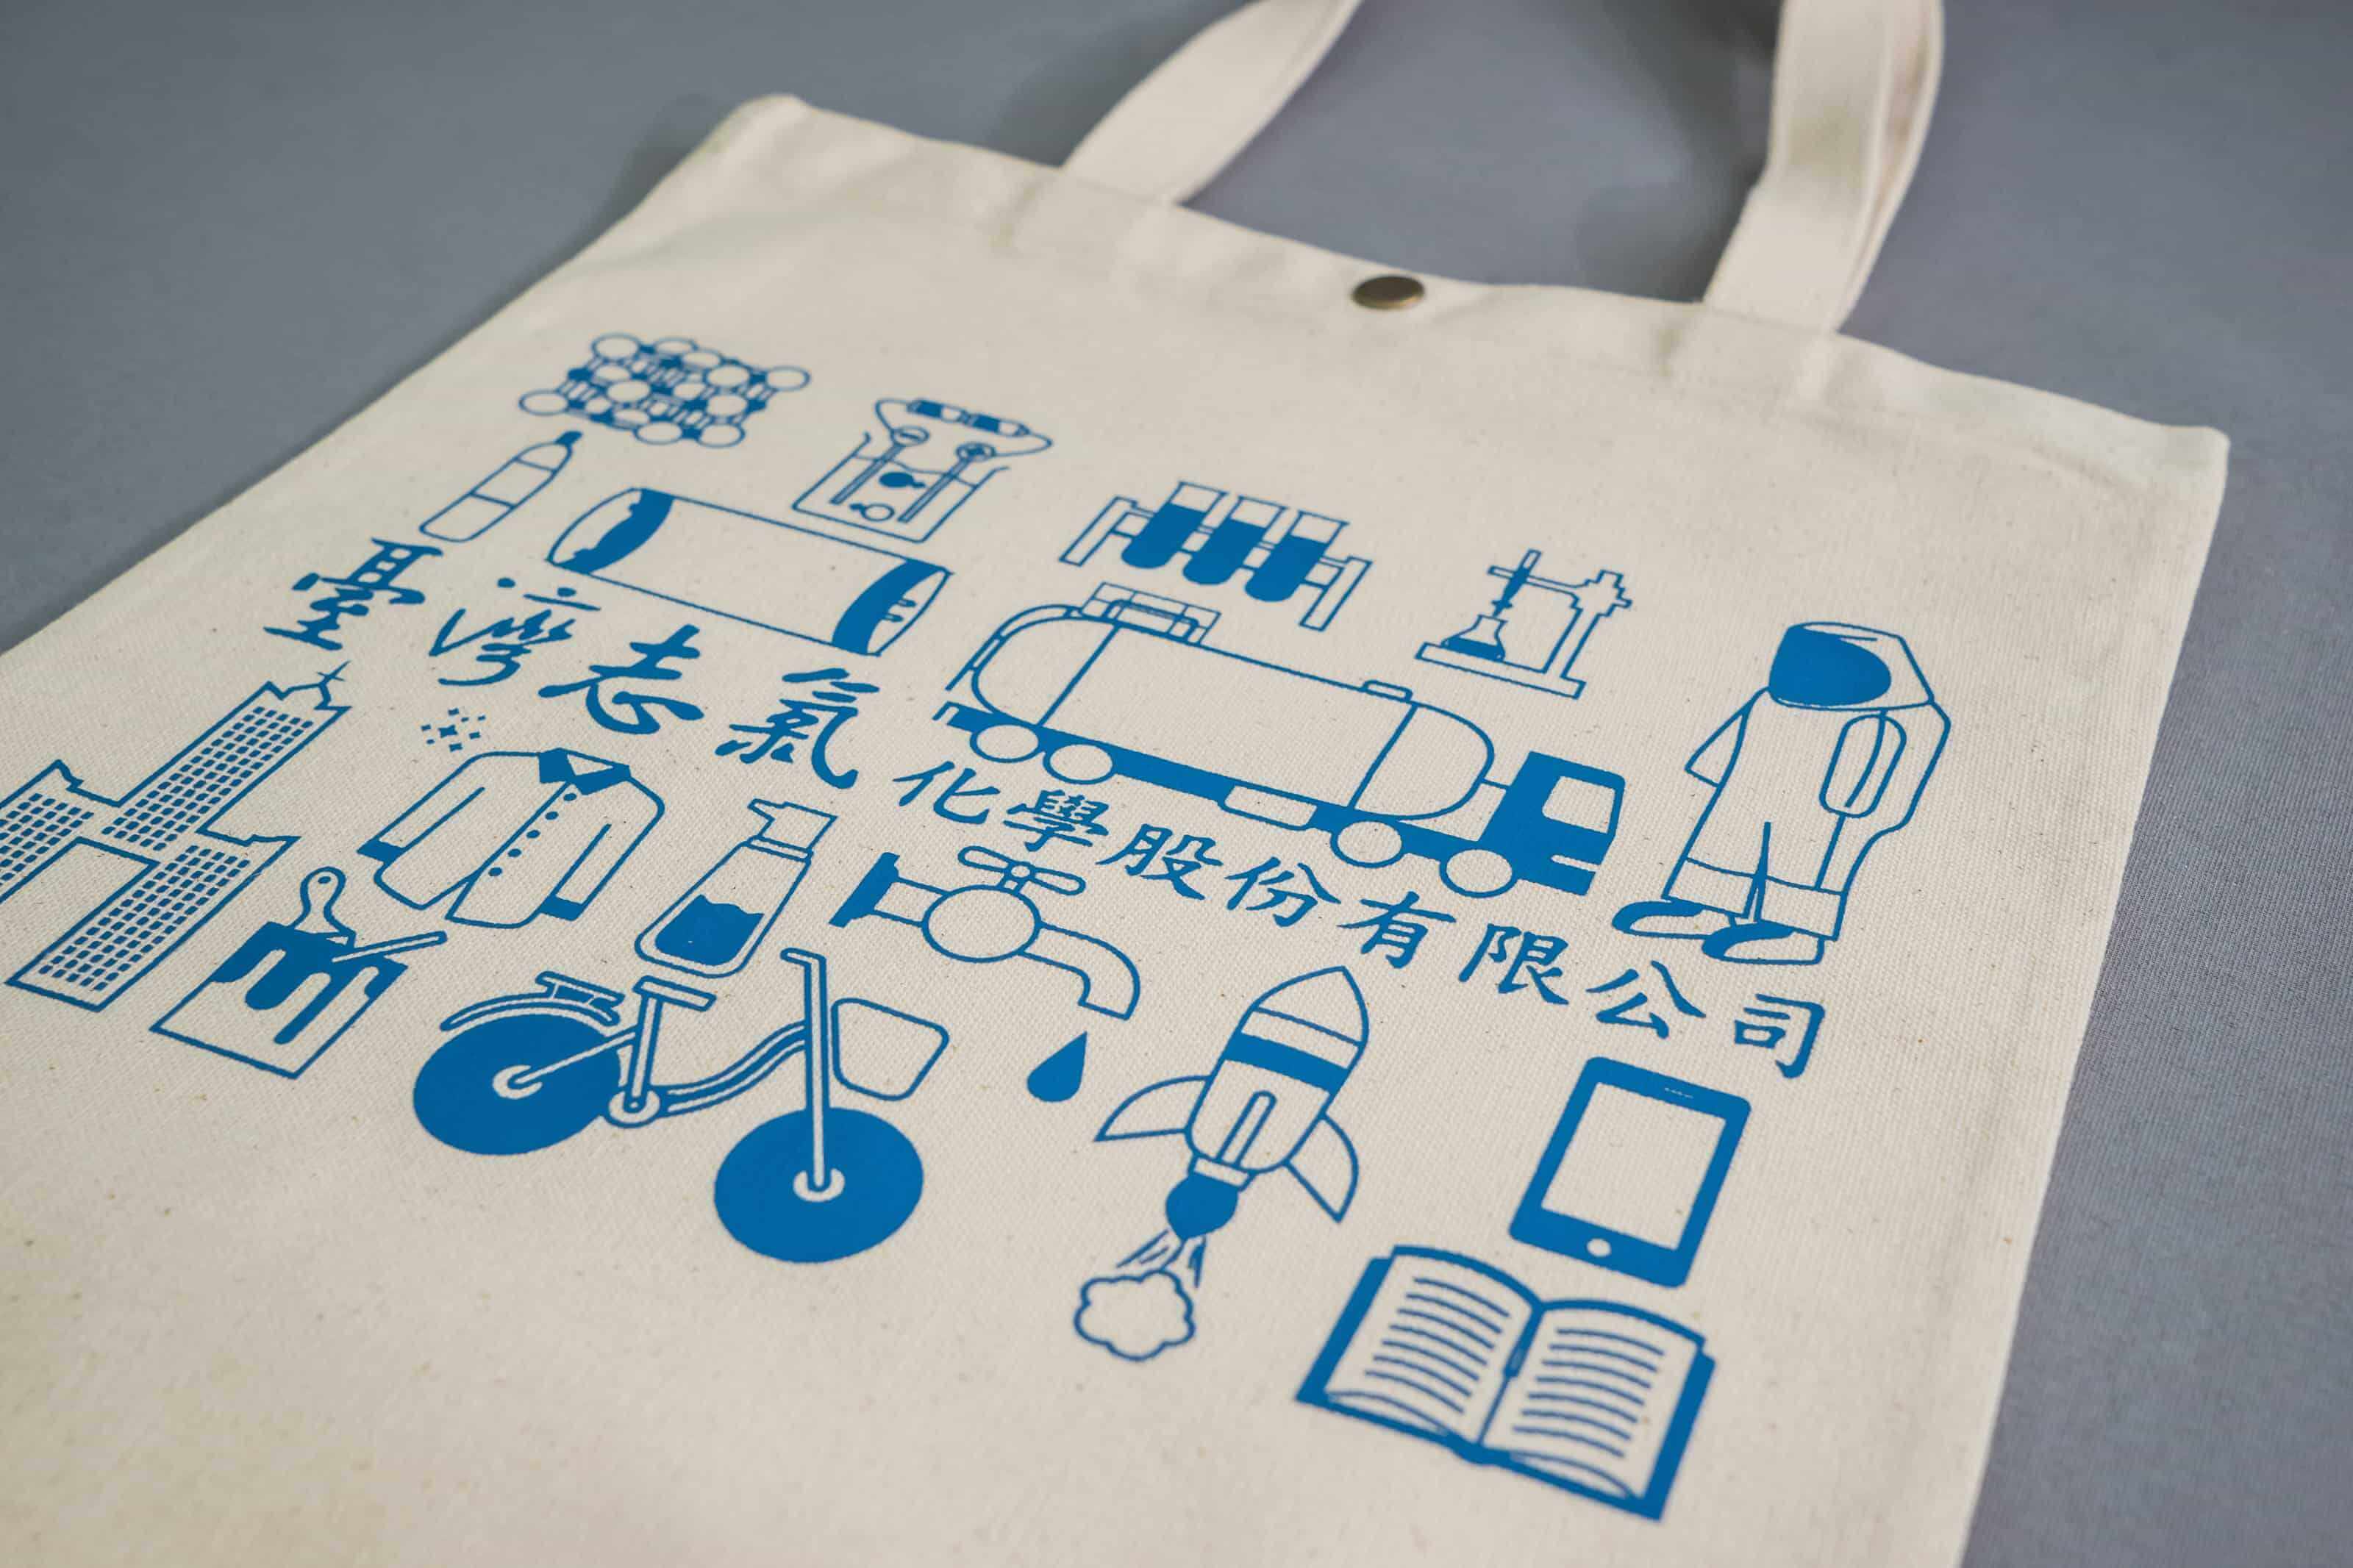 台灣志氯公司紀念提袋 的第1張圖(客製化公司制服、班服製作、團體服製作等示意或作品圖)